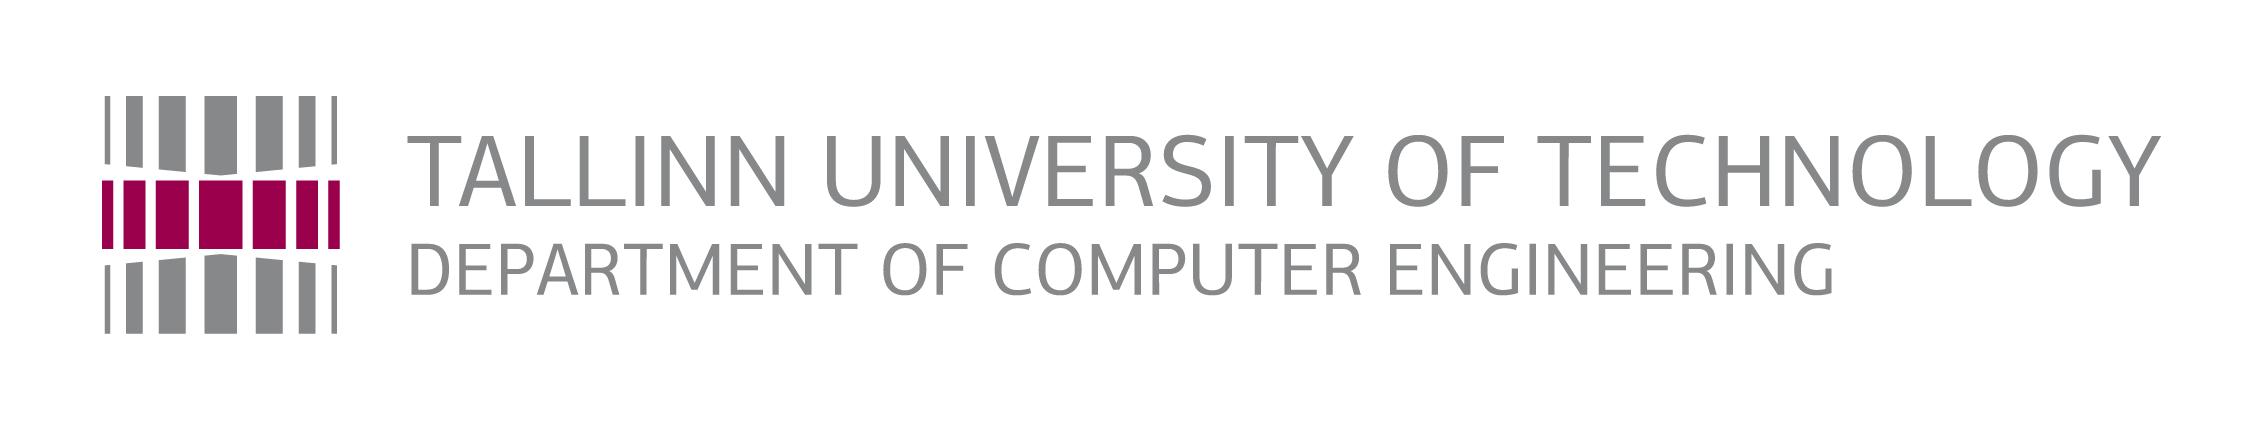 Department of Computer Engineering